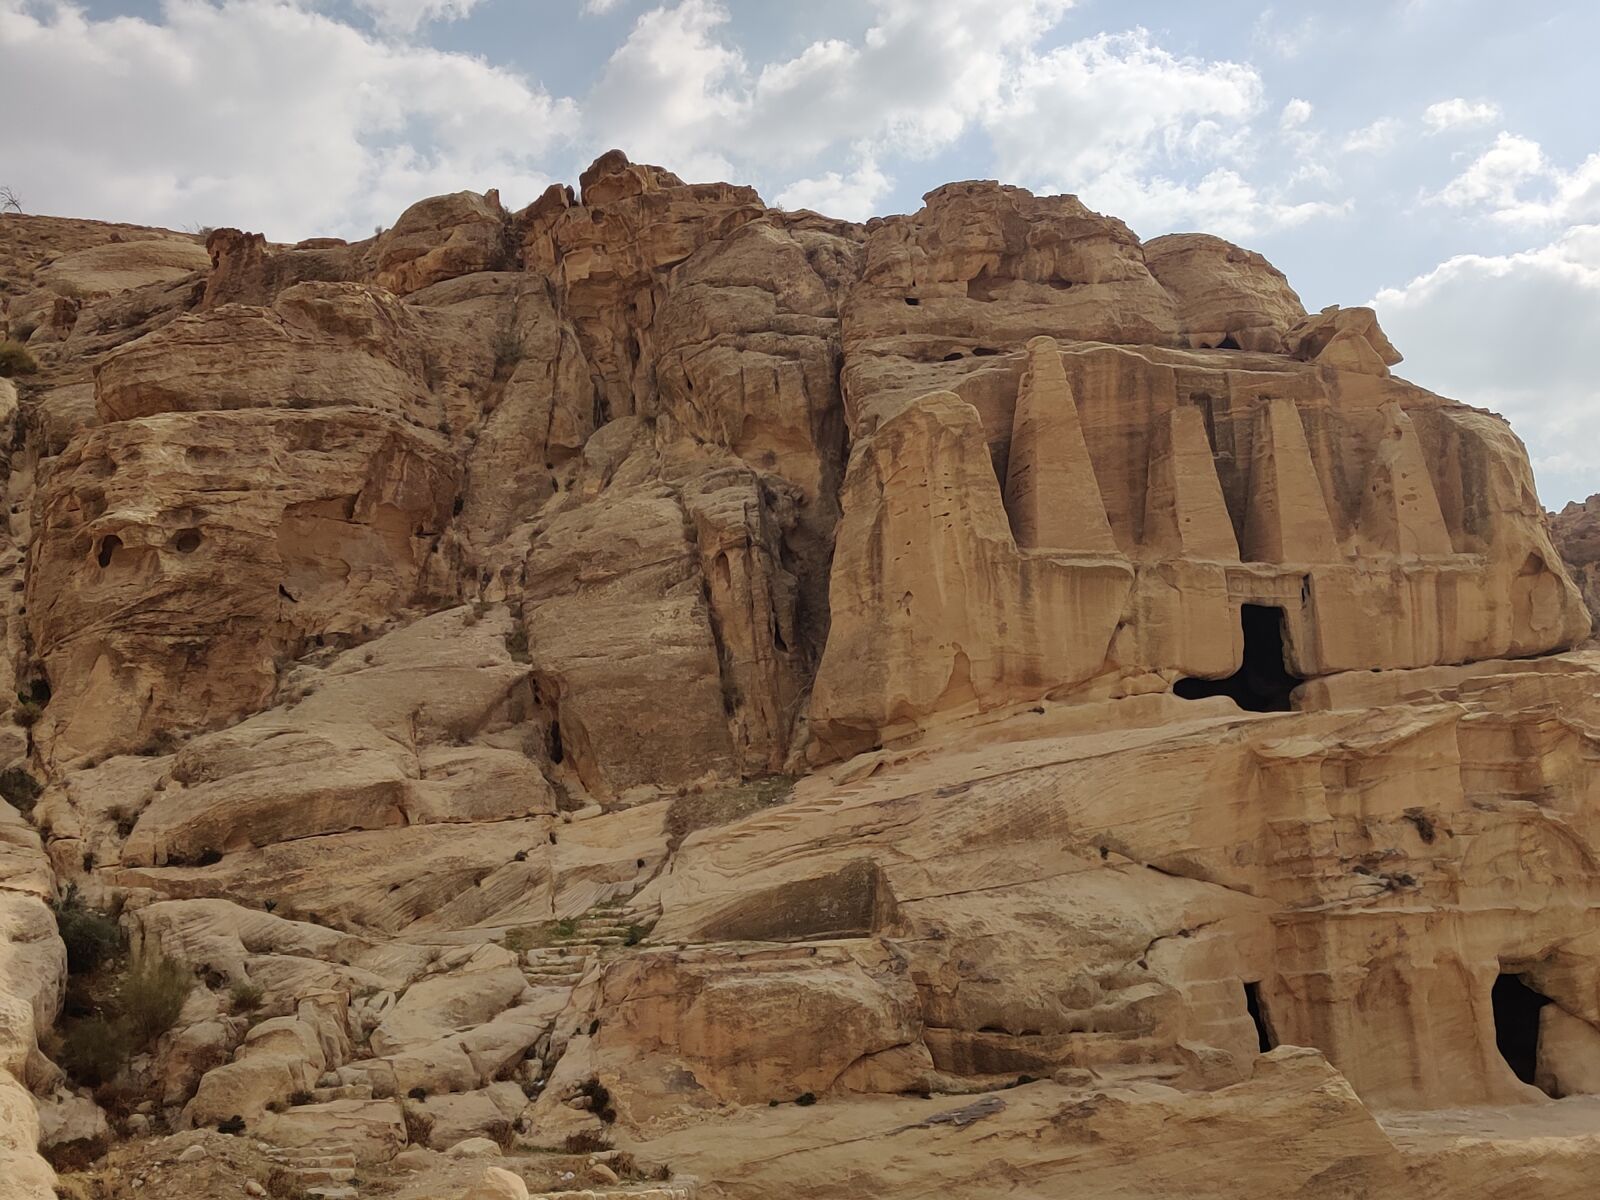 OnePlus GM1911 sample photo. Petra, cave, jordan photography